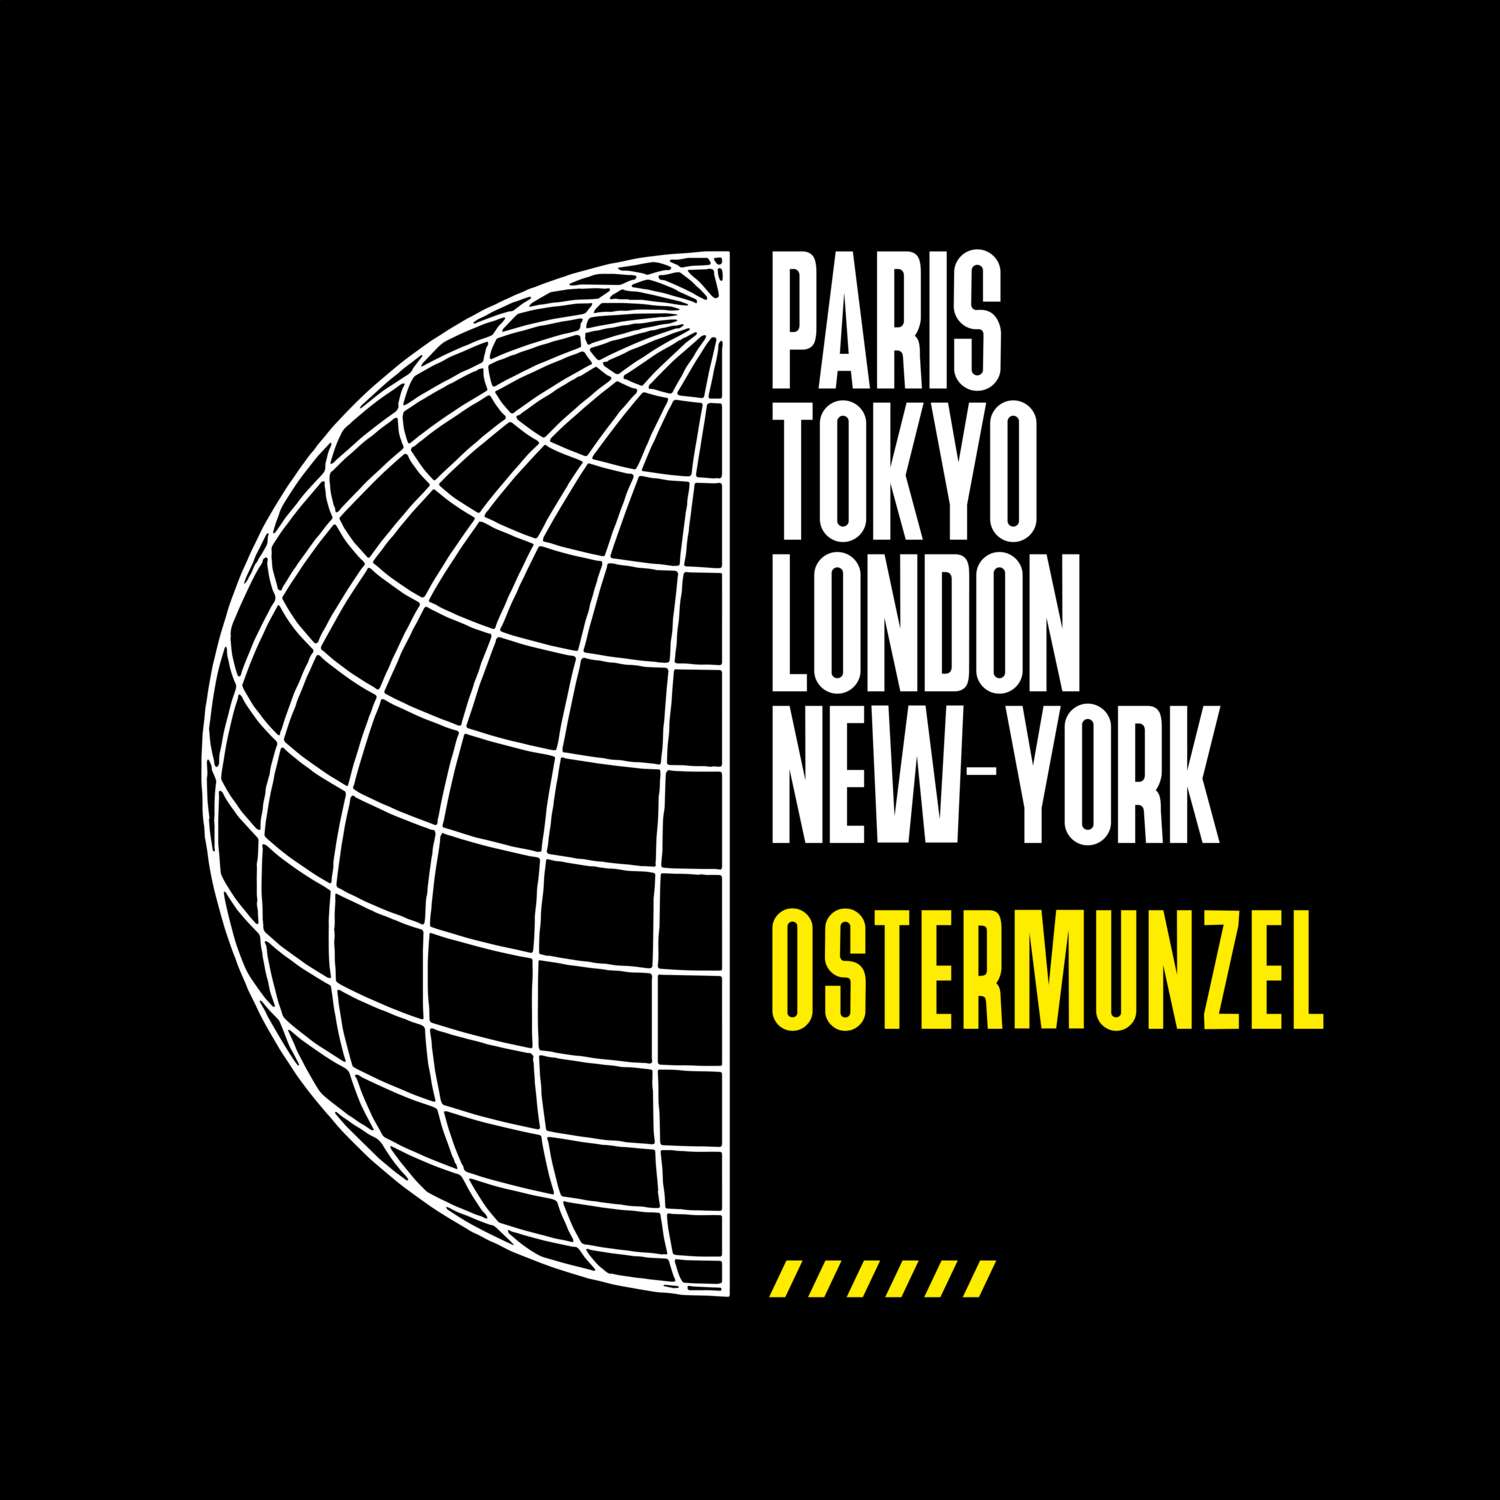 Ostermunzel T-Shirt »Paris Tokyo London«